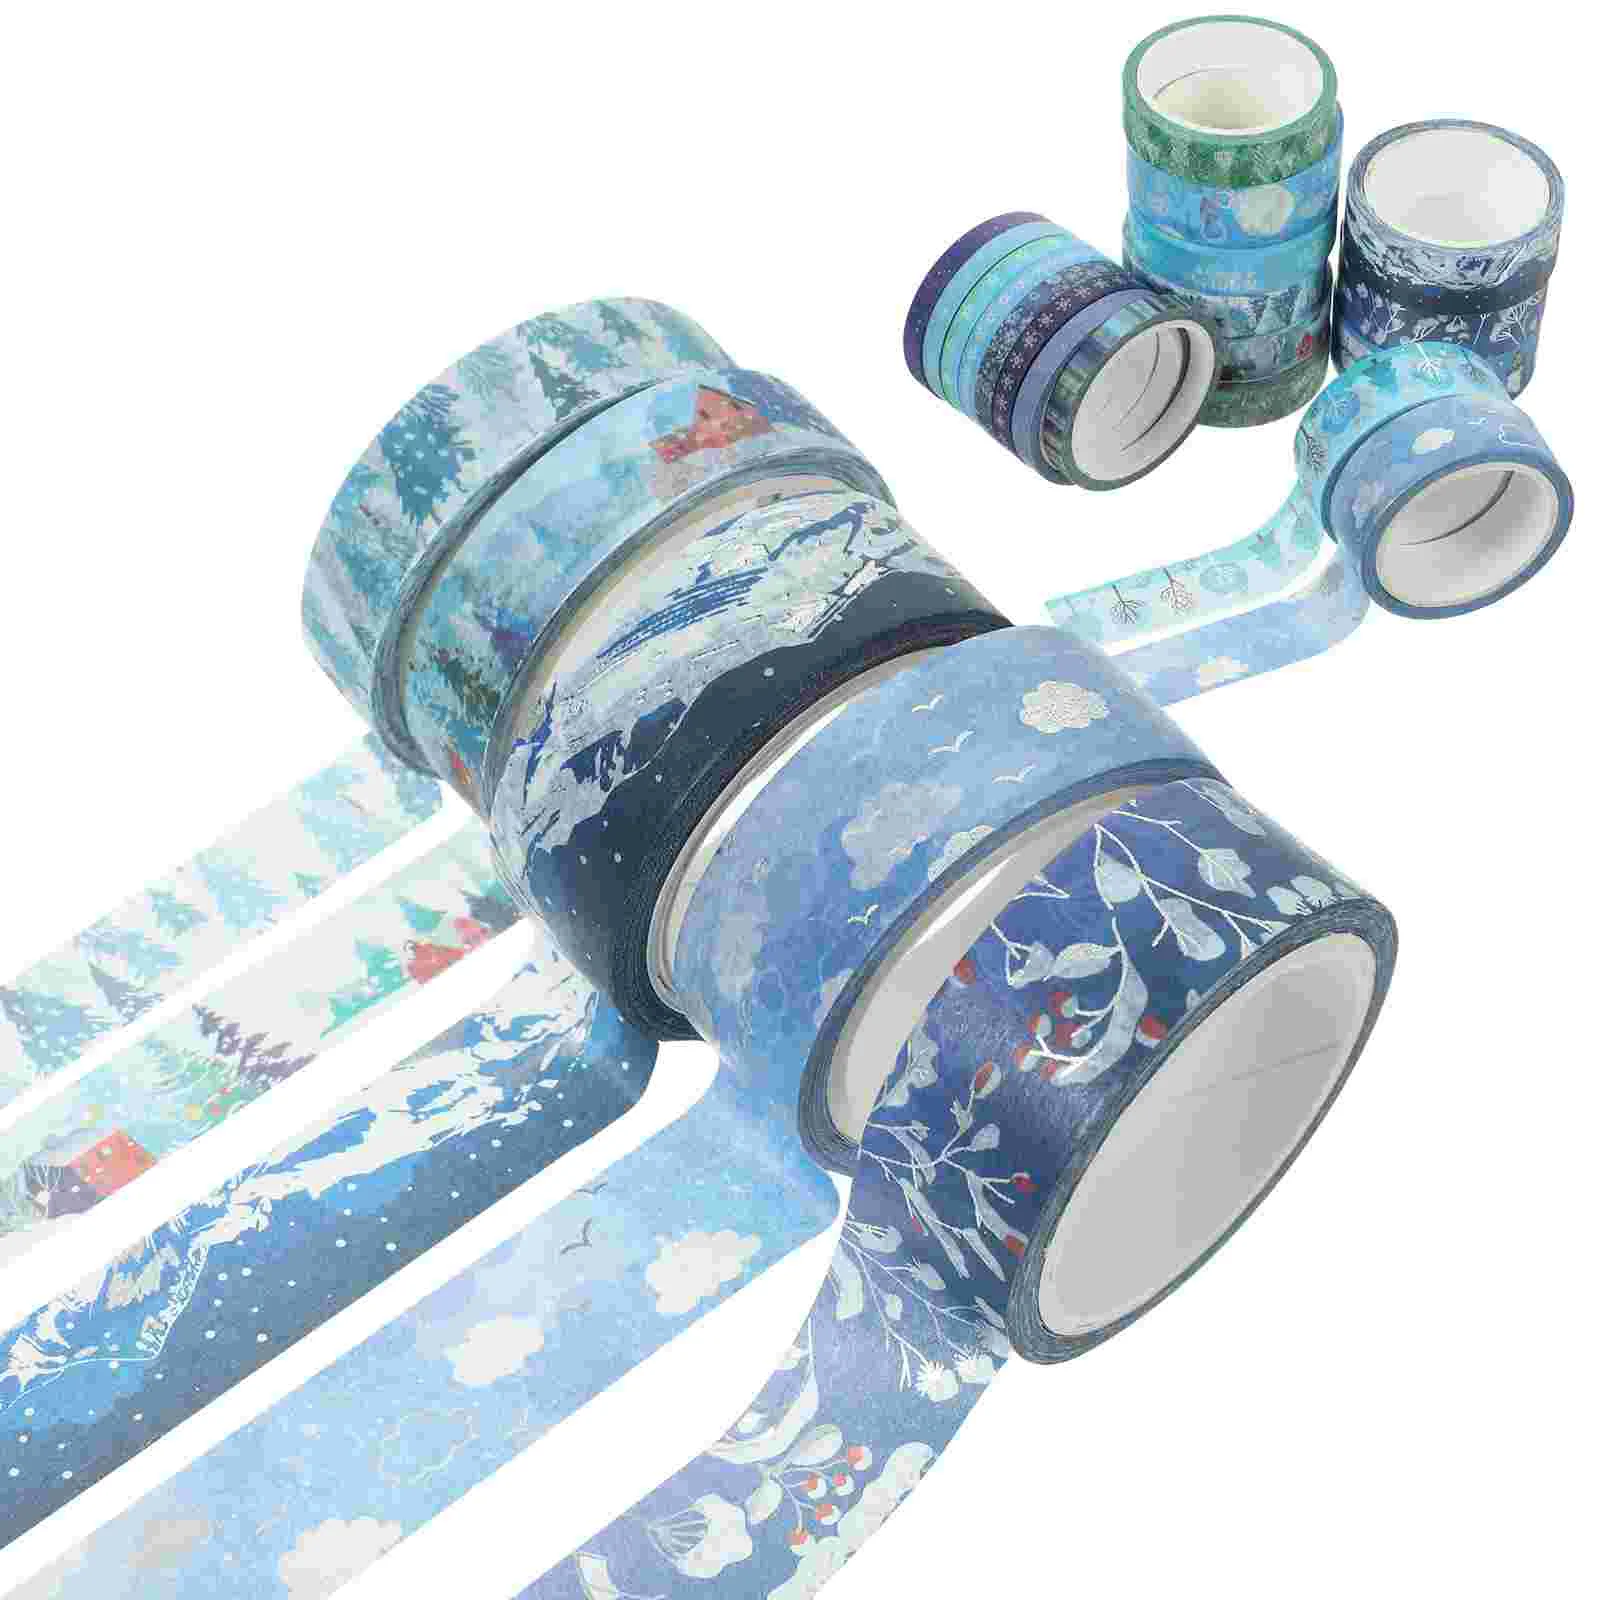 

19 рулонов бумажной ленты Washi, декоративная клейкая лента, рождественские ленты для рукоделия, упаковки подарков